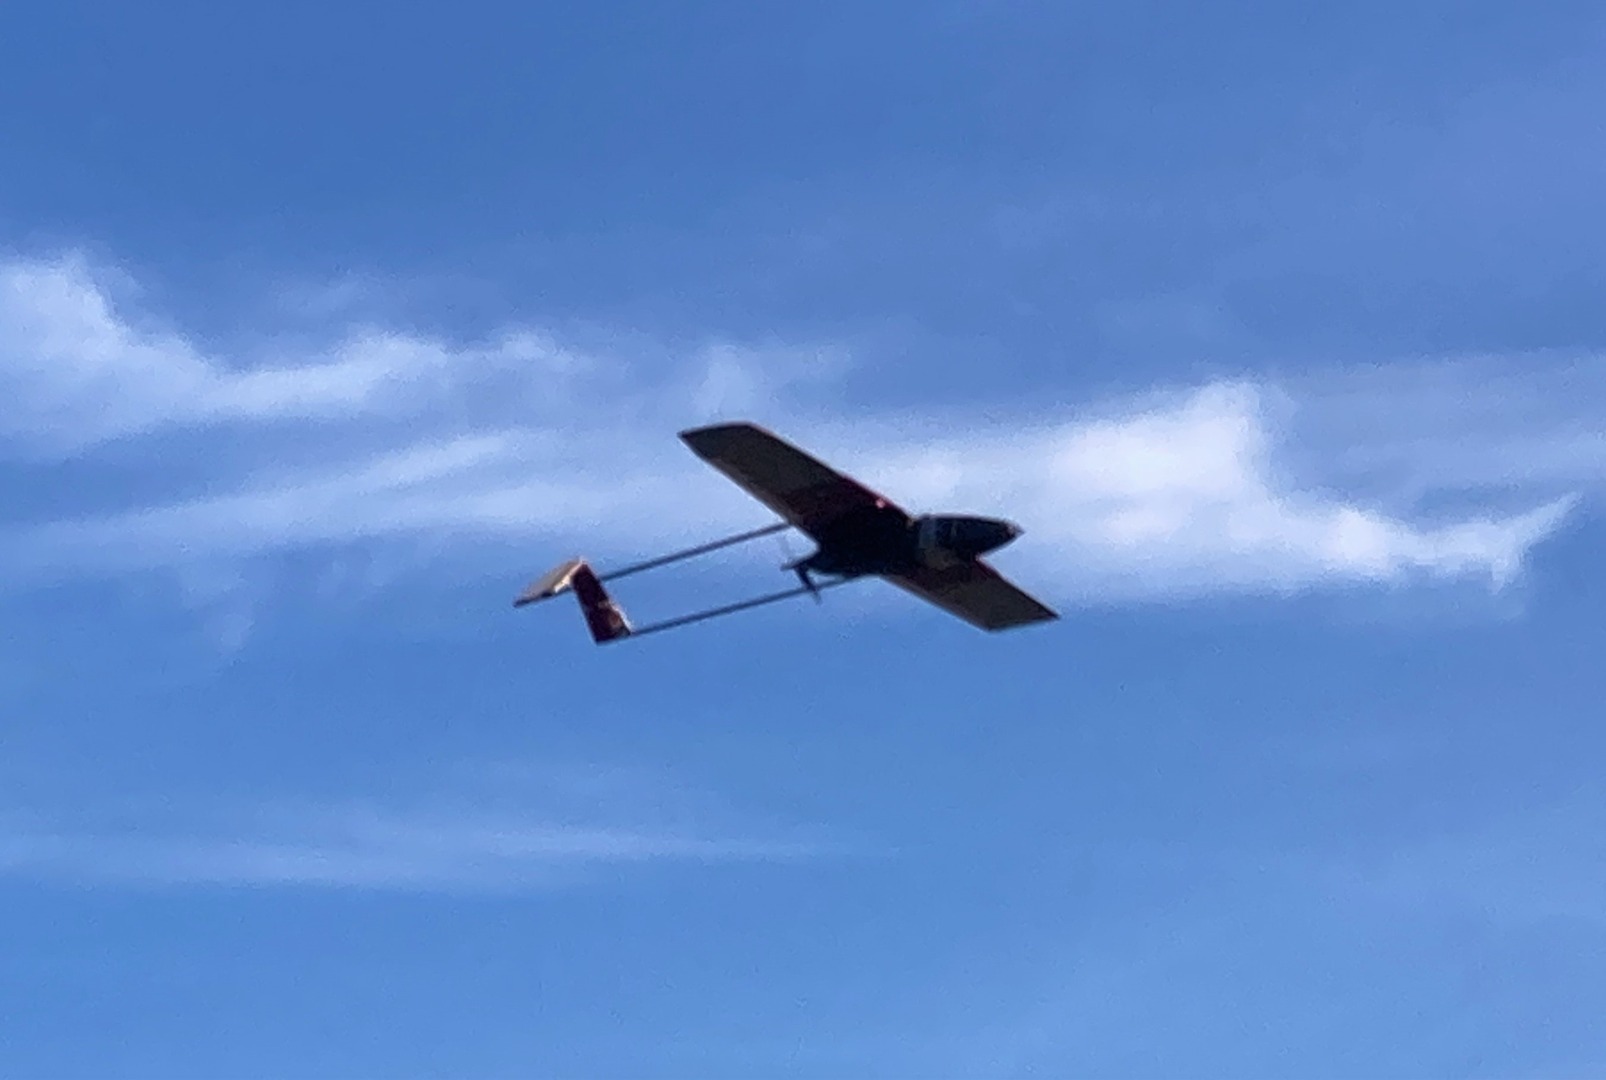 KKTC’nin ilk yerli insansız hava aracı geliştirildi